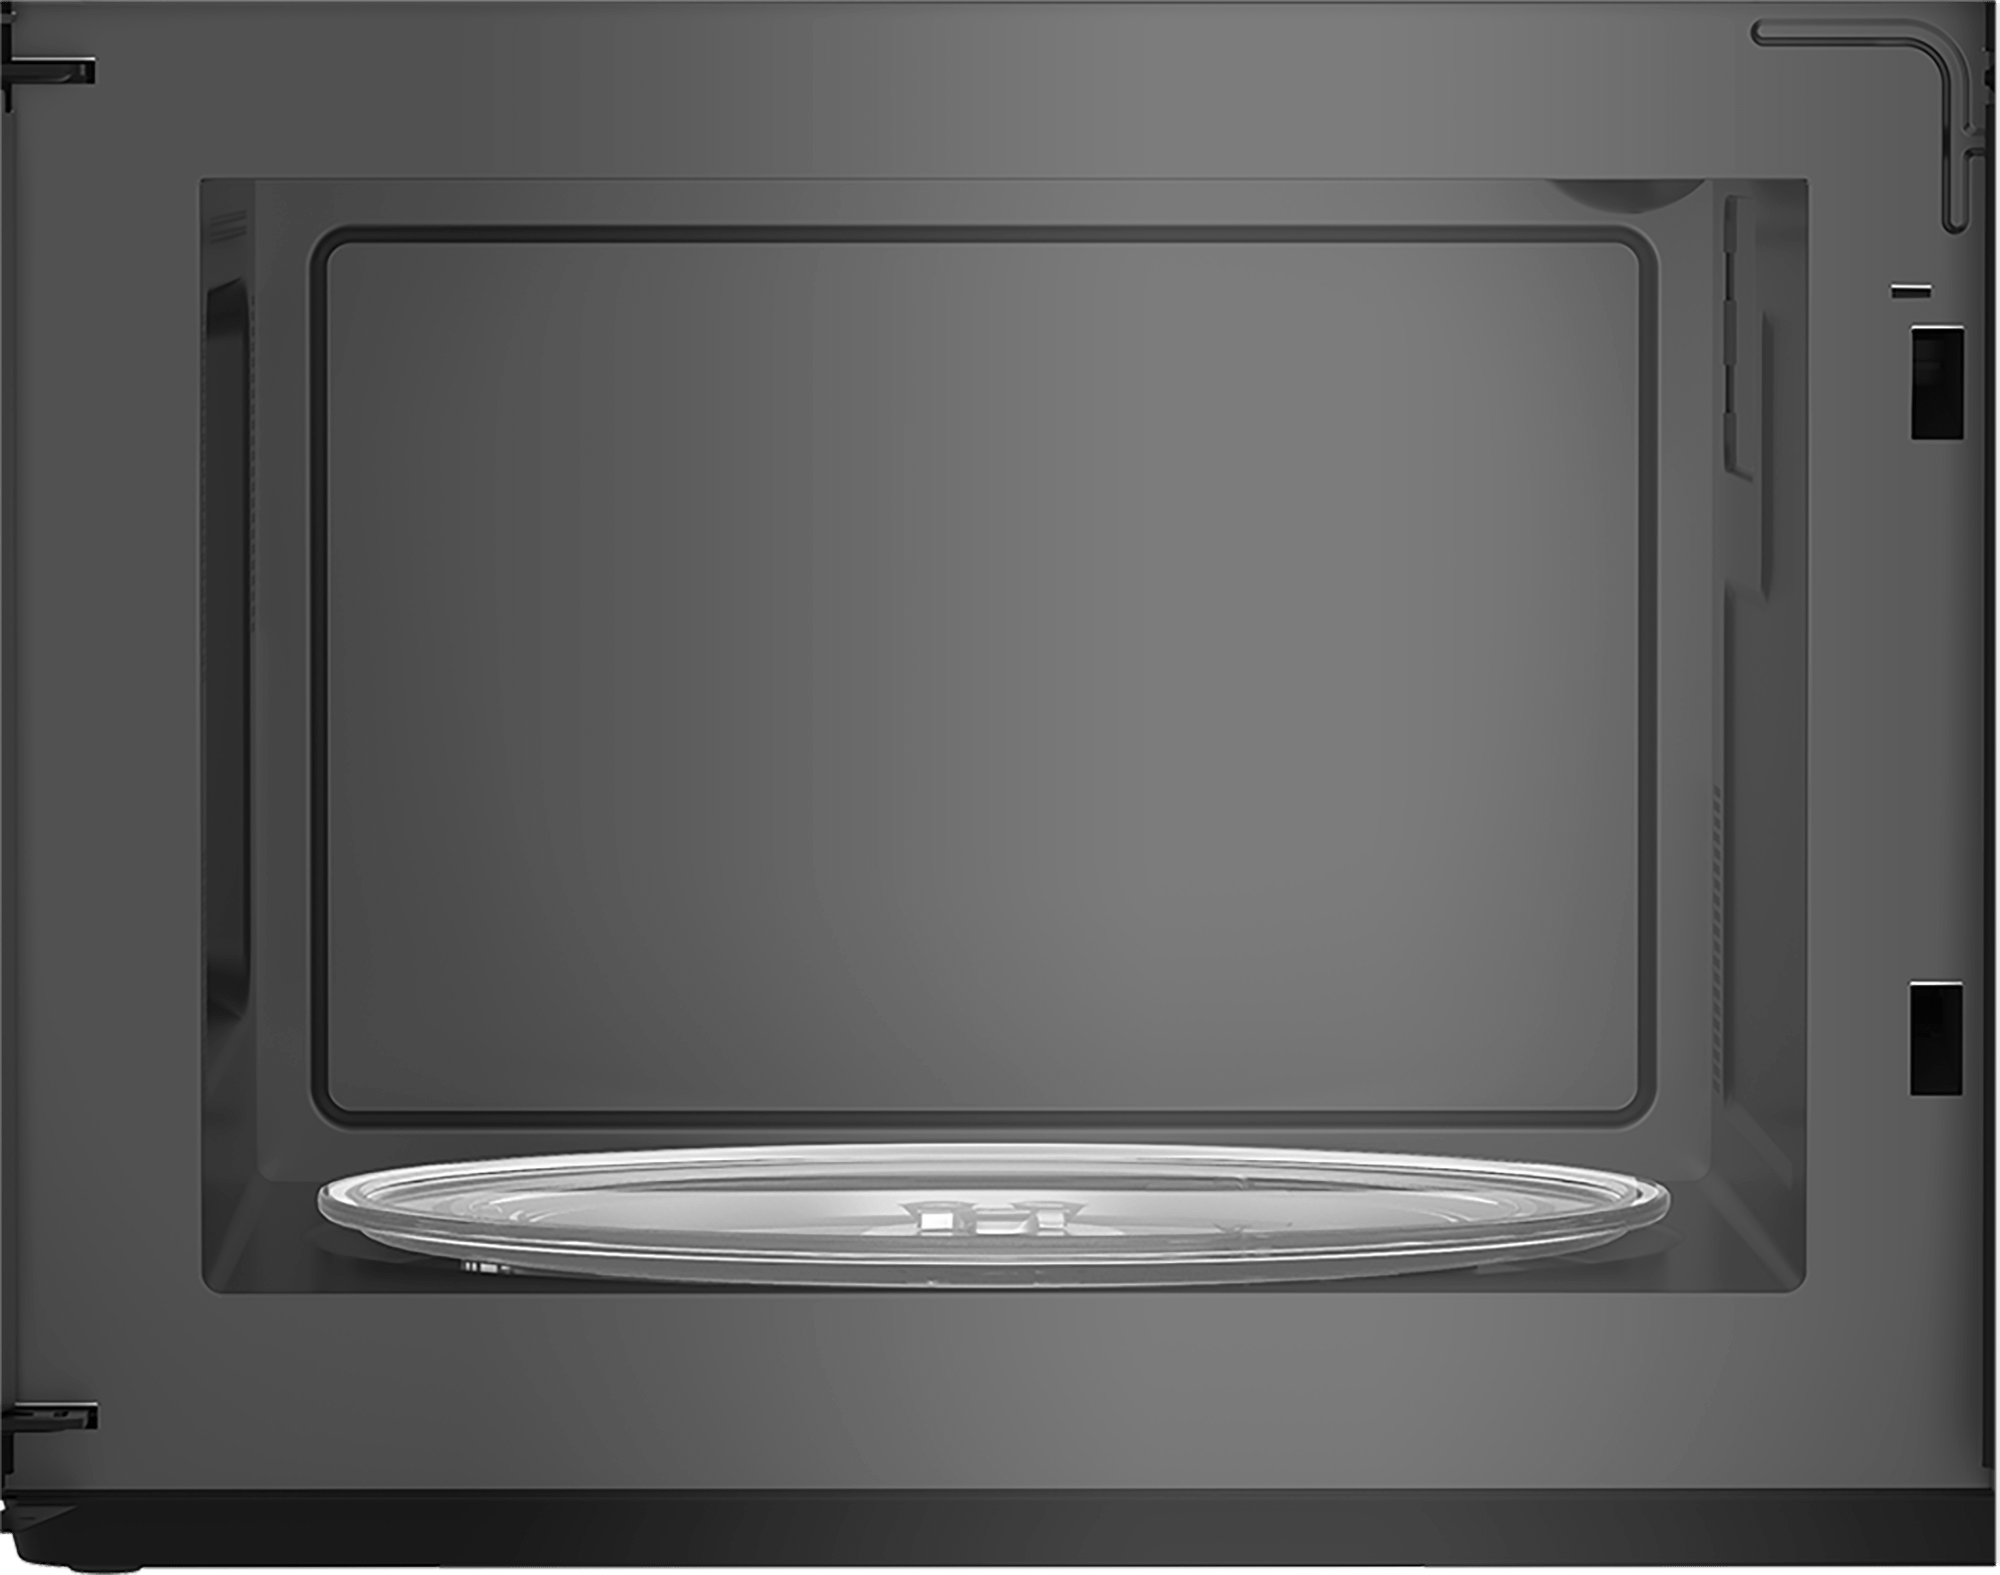 Beko Built-in Microwave (1000 W, 34 L)